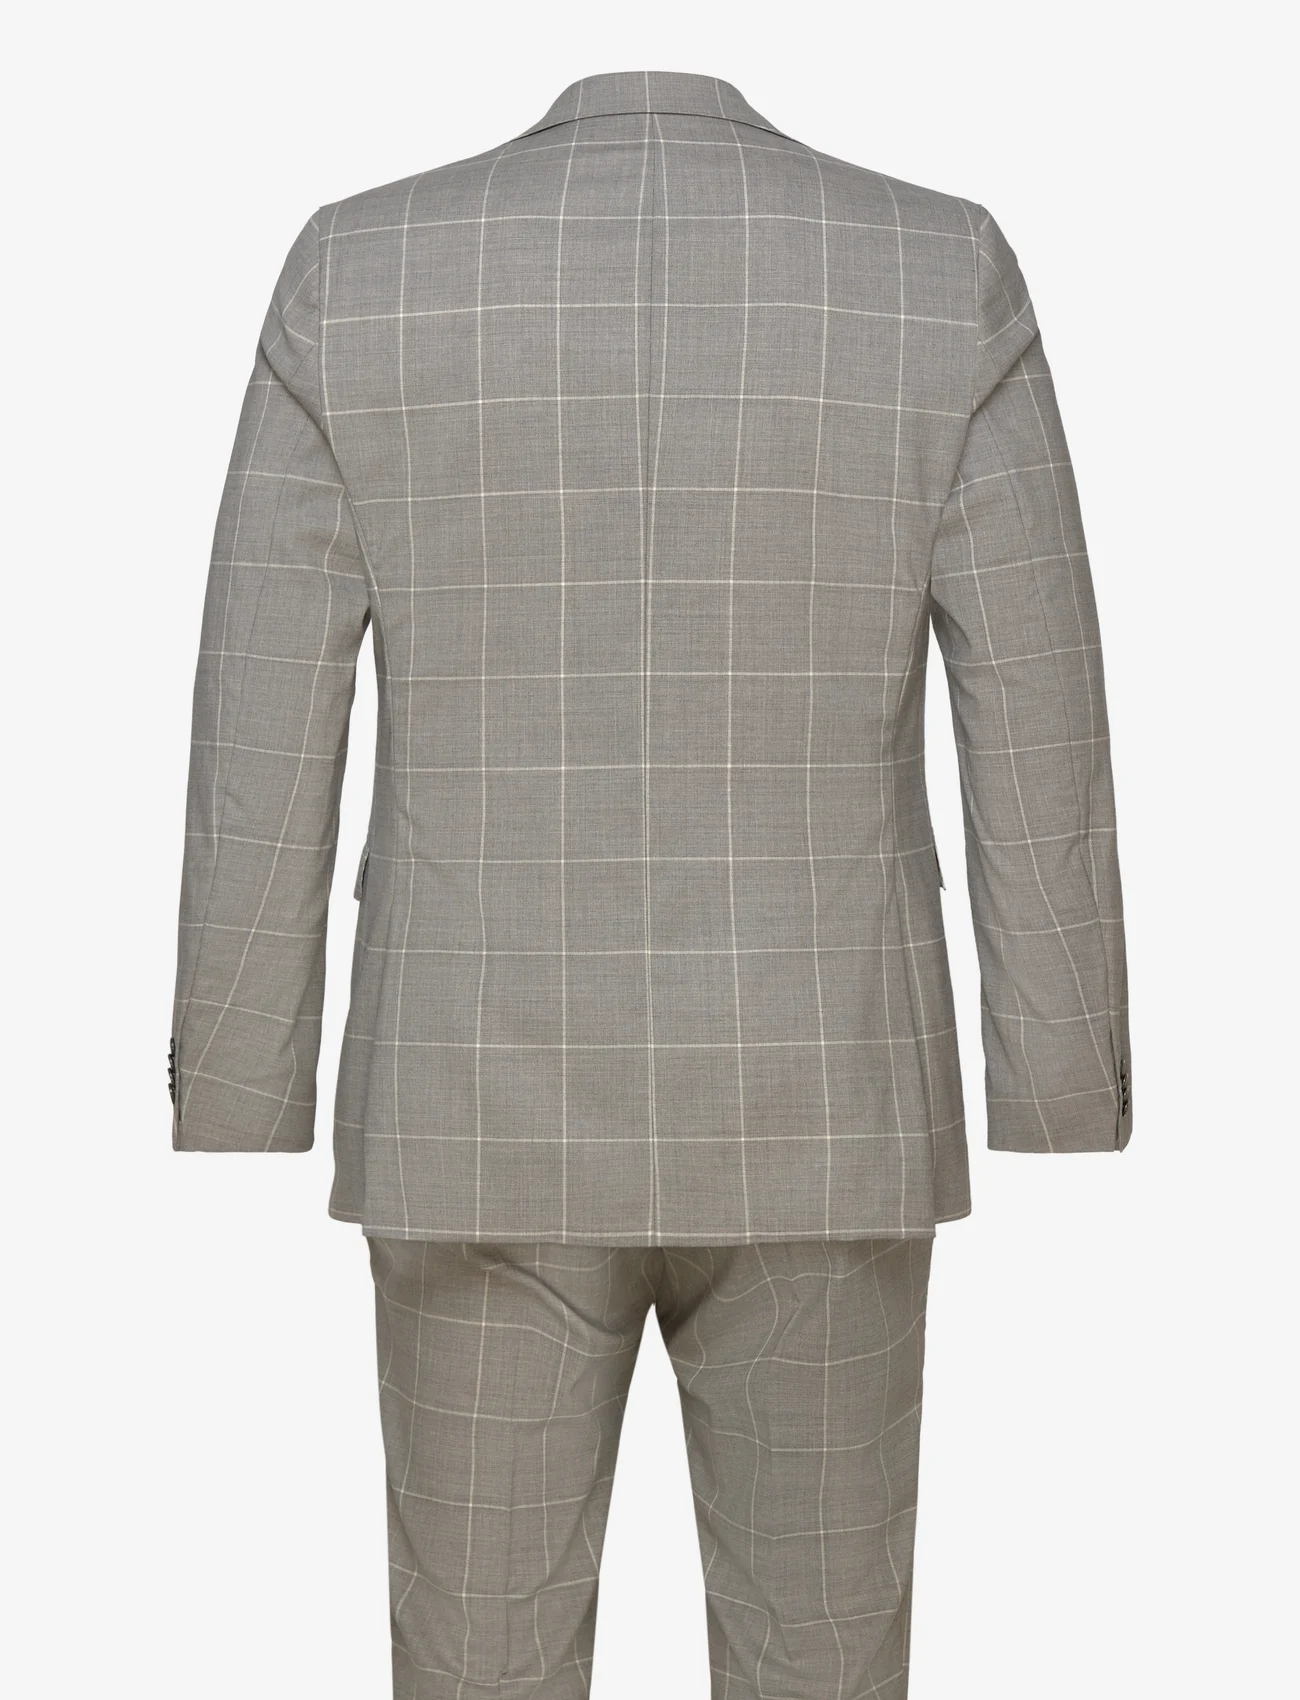 SIR of Sweden - Eliot & Alex Suit - kostuums met dubbele knopen - lt grey - 1